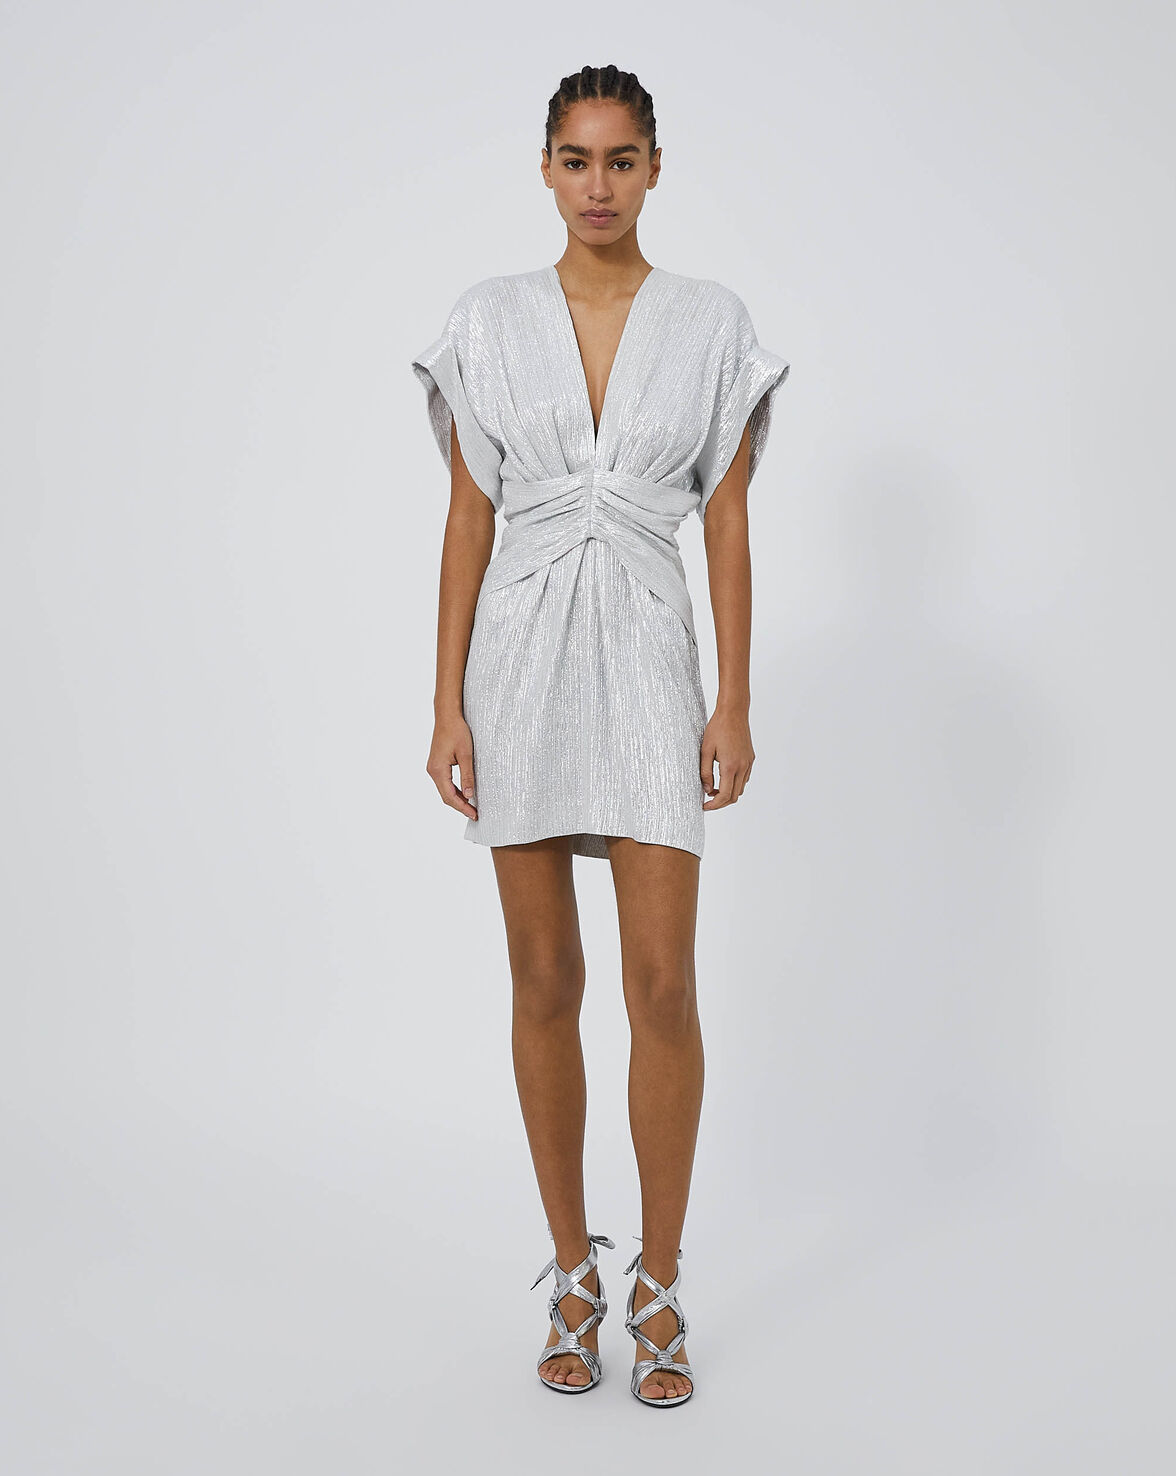 Iro Bilou Lurex Dress With Plunging Neckline In White/silver